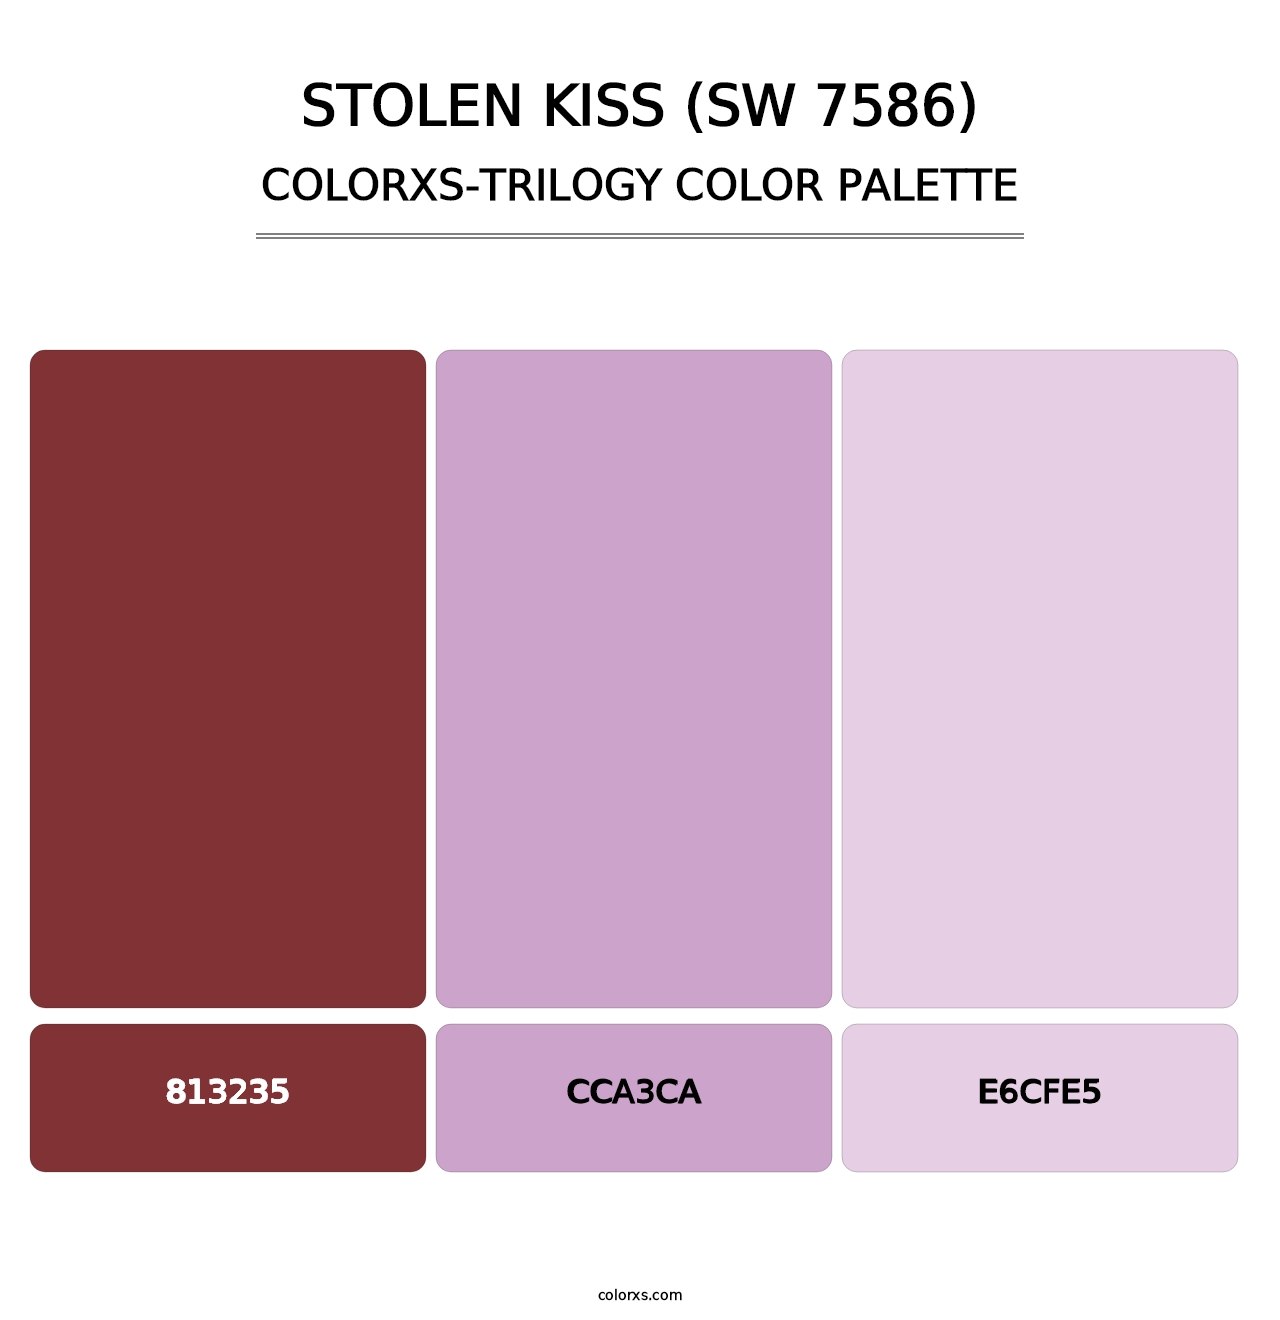 Stolen Kiss (SW 7586) - Colorxs Trilogy Palette